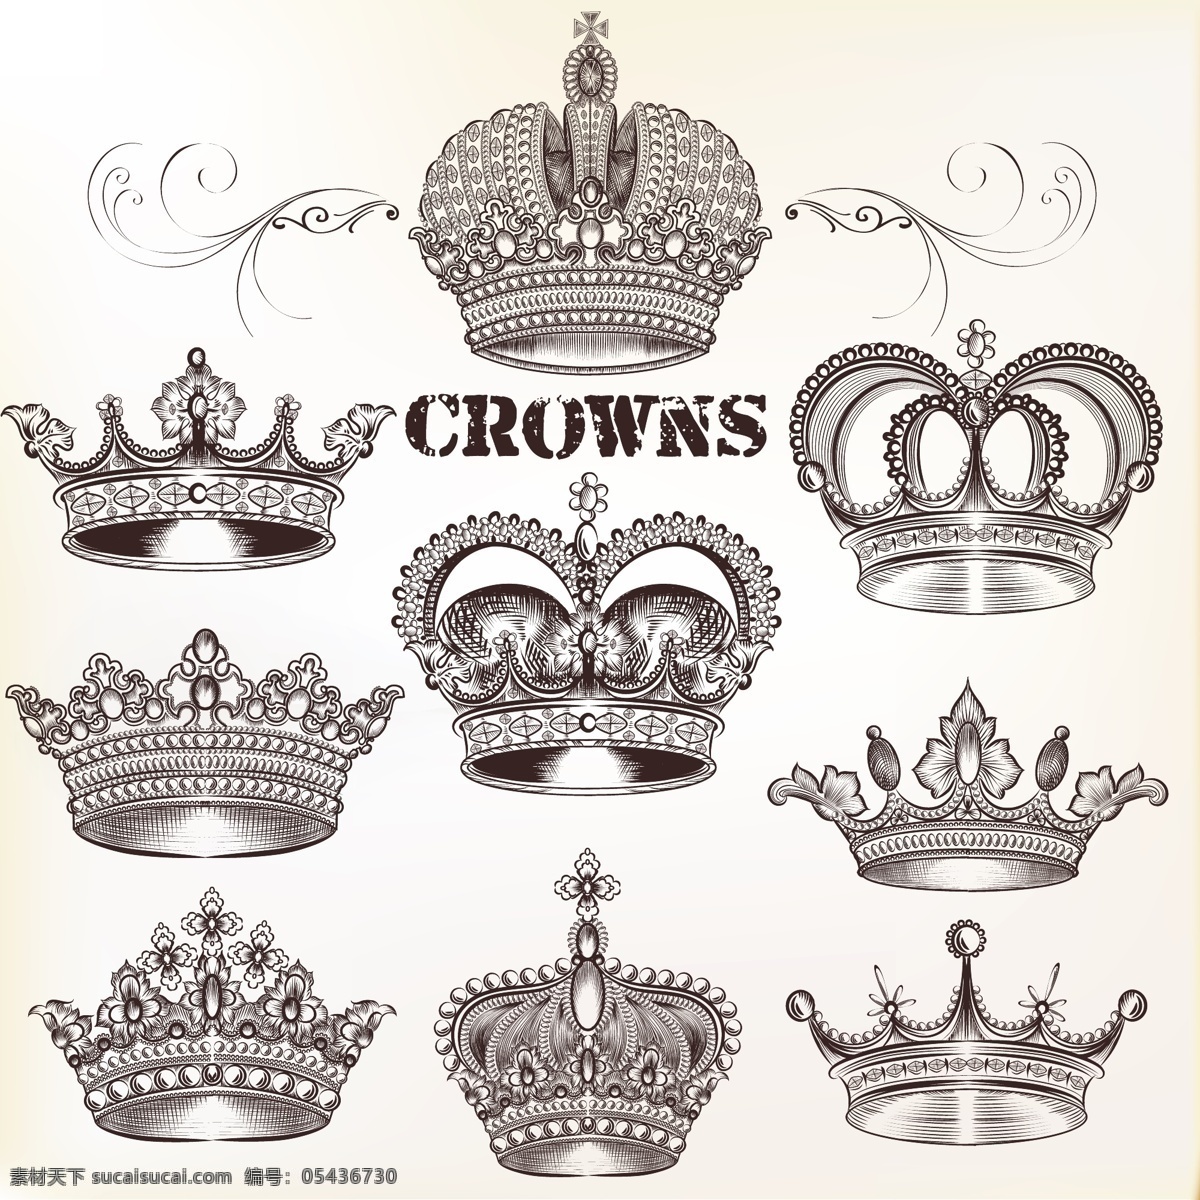 冠收藏 王冠 公主 皇室 国王 王后 国王王冠 王子 收藏 套装